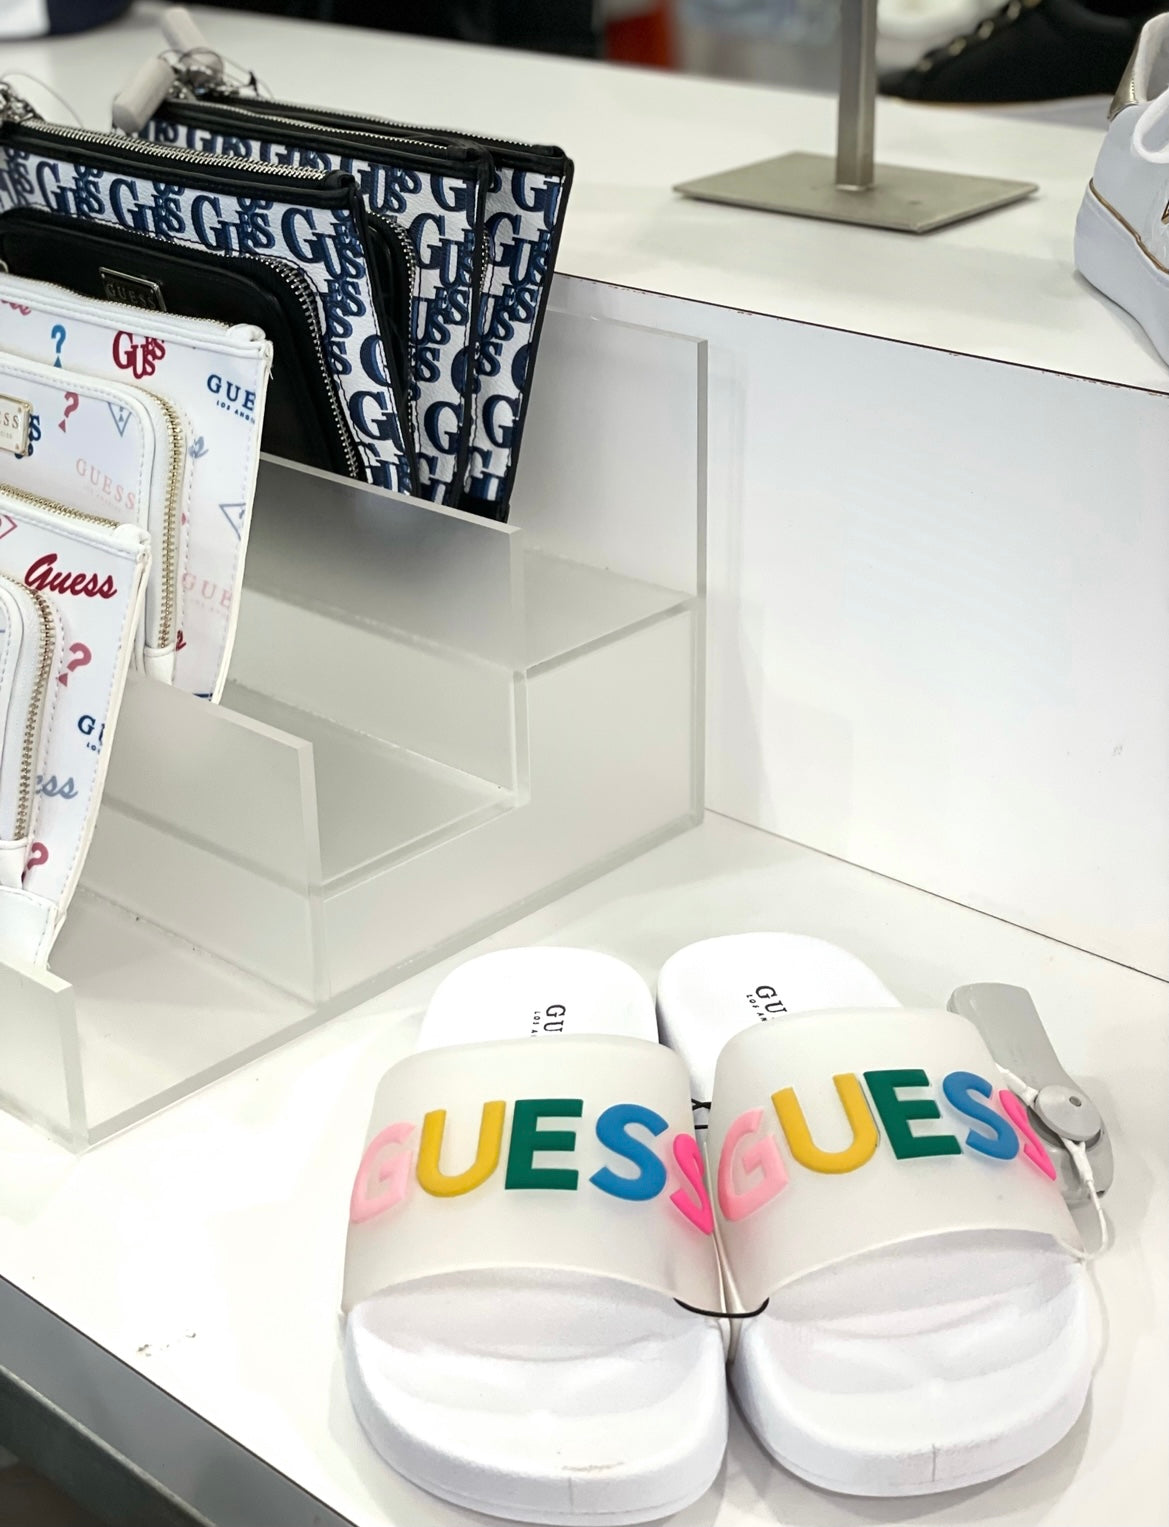 Sandalias de colores Guess Originales – Shop We Love